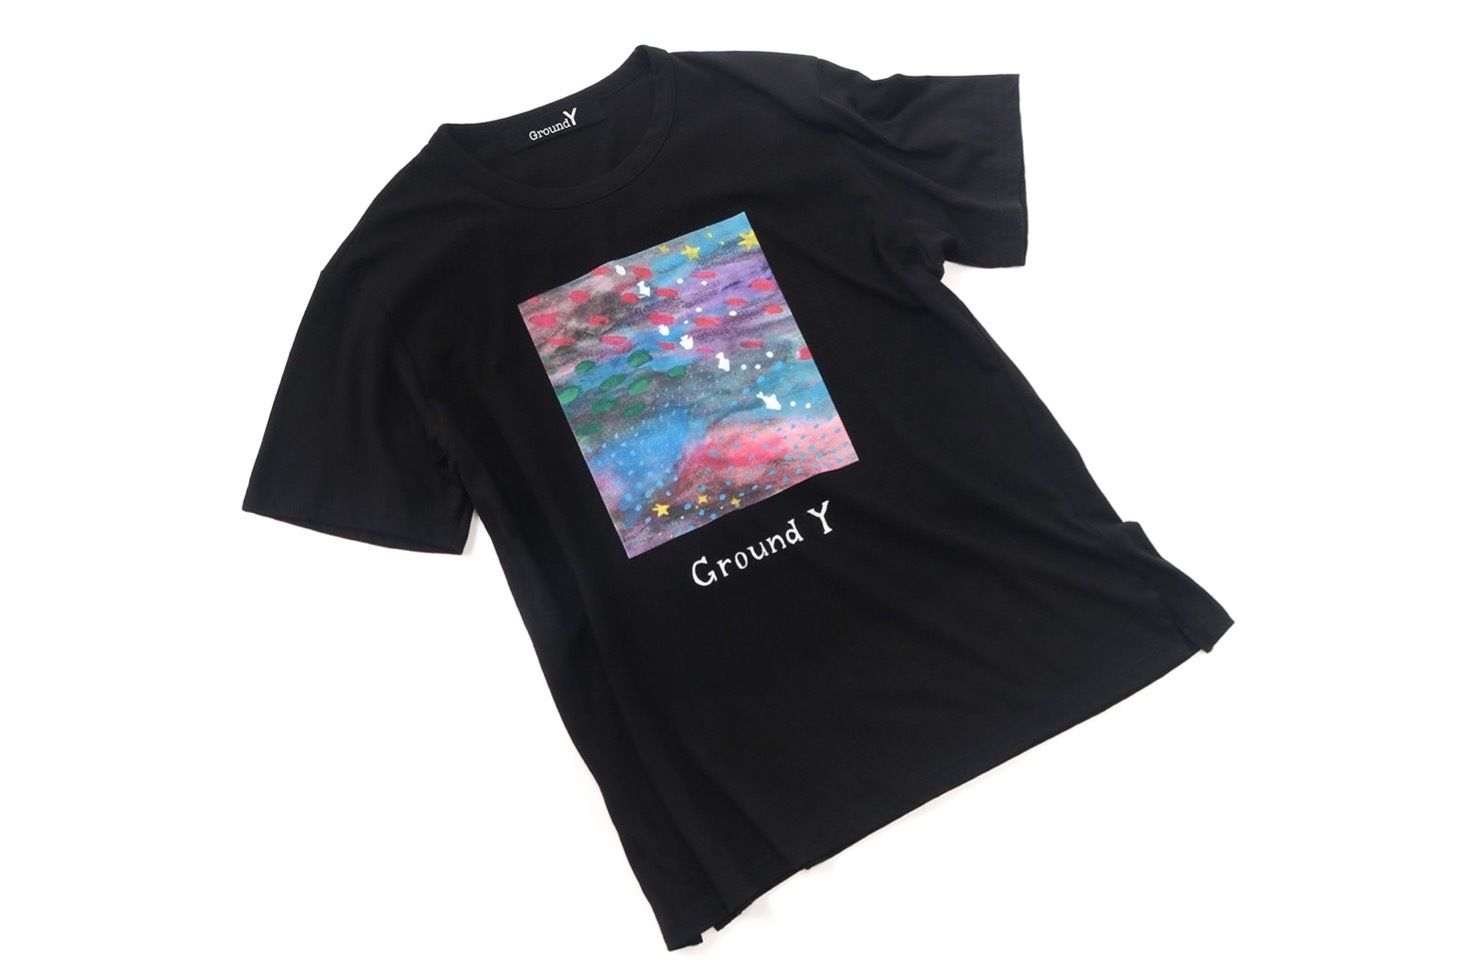 Ground Y“夢の中”などのイラストを施したTシャツ、深川麻衣の描き ...